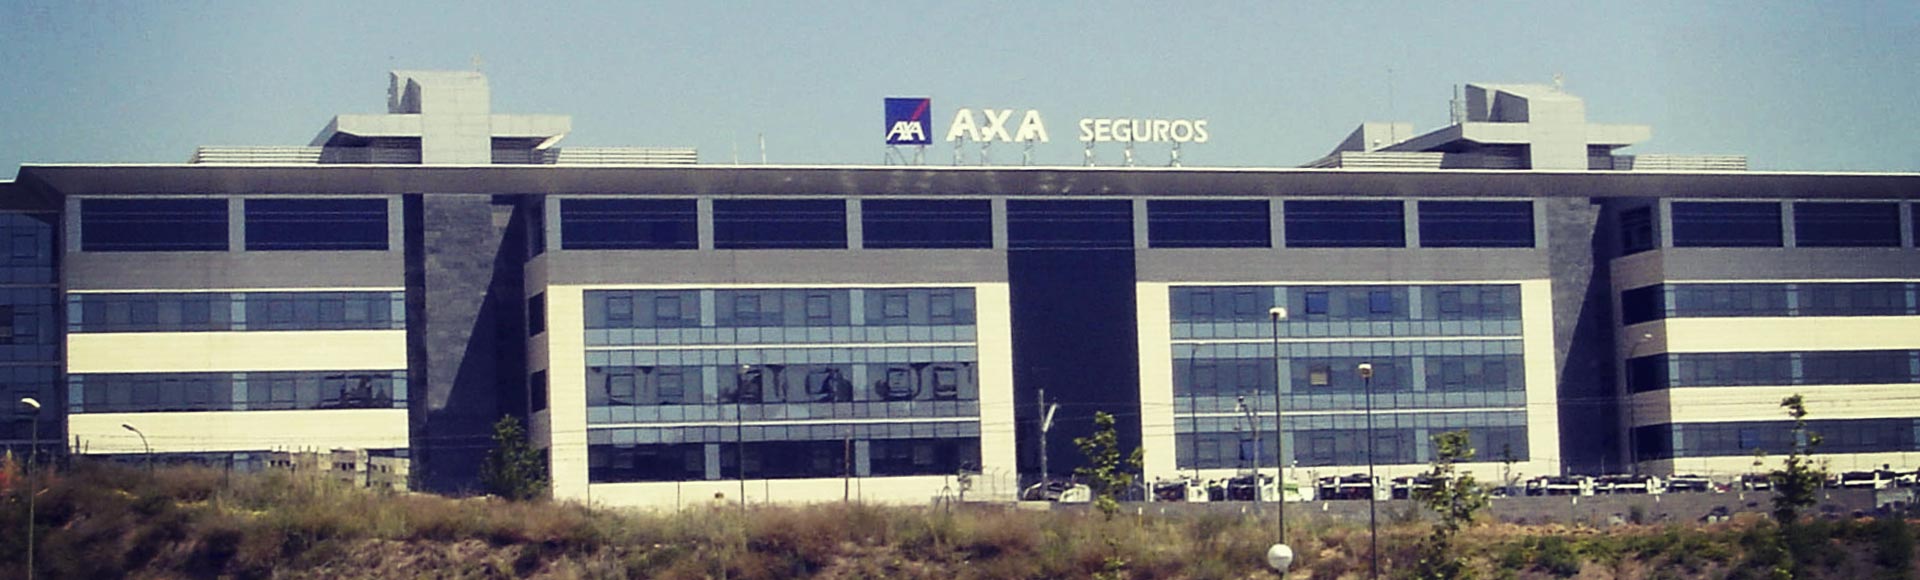 Convención de GEXBROK en la sede de Madrid de AXA